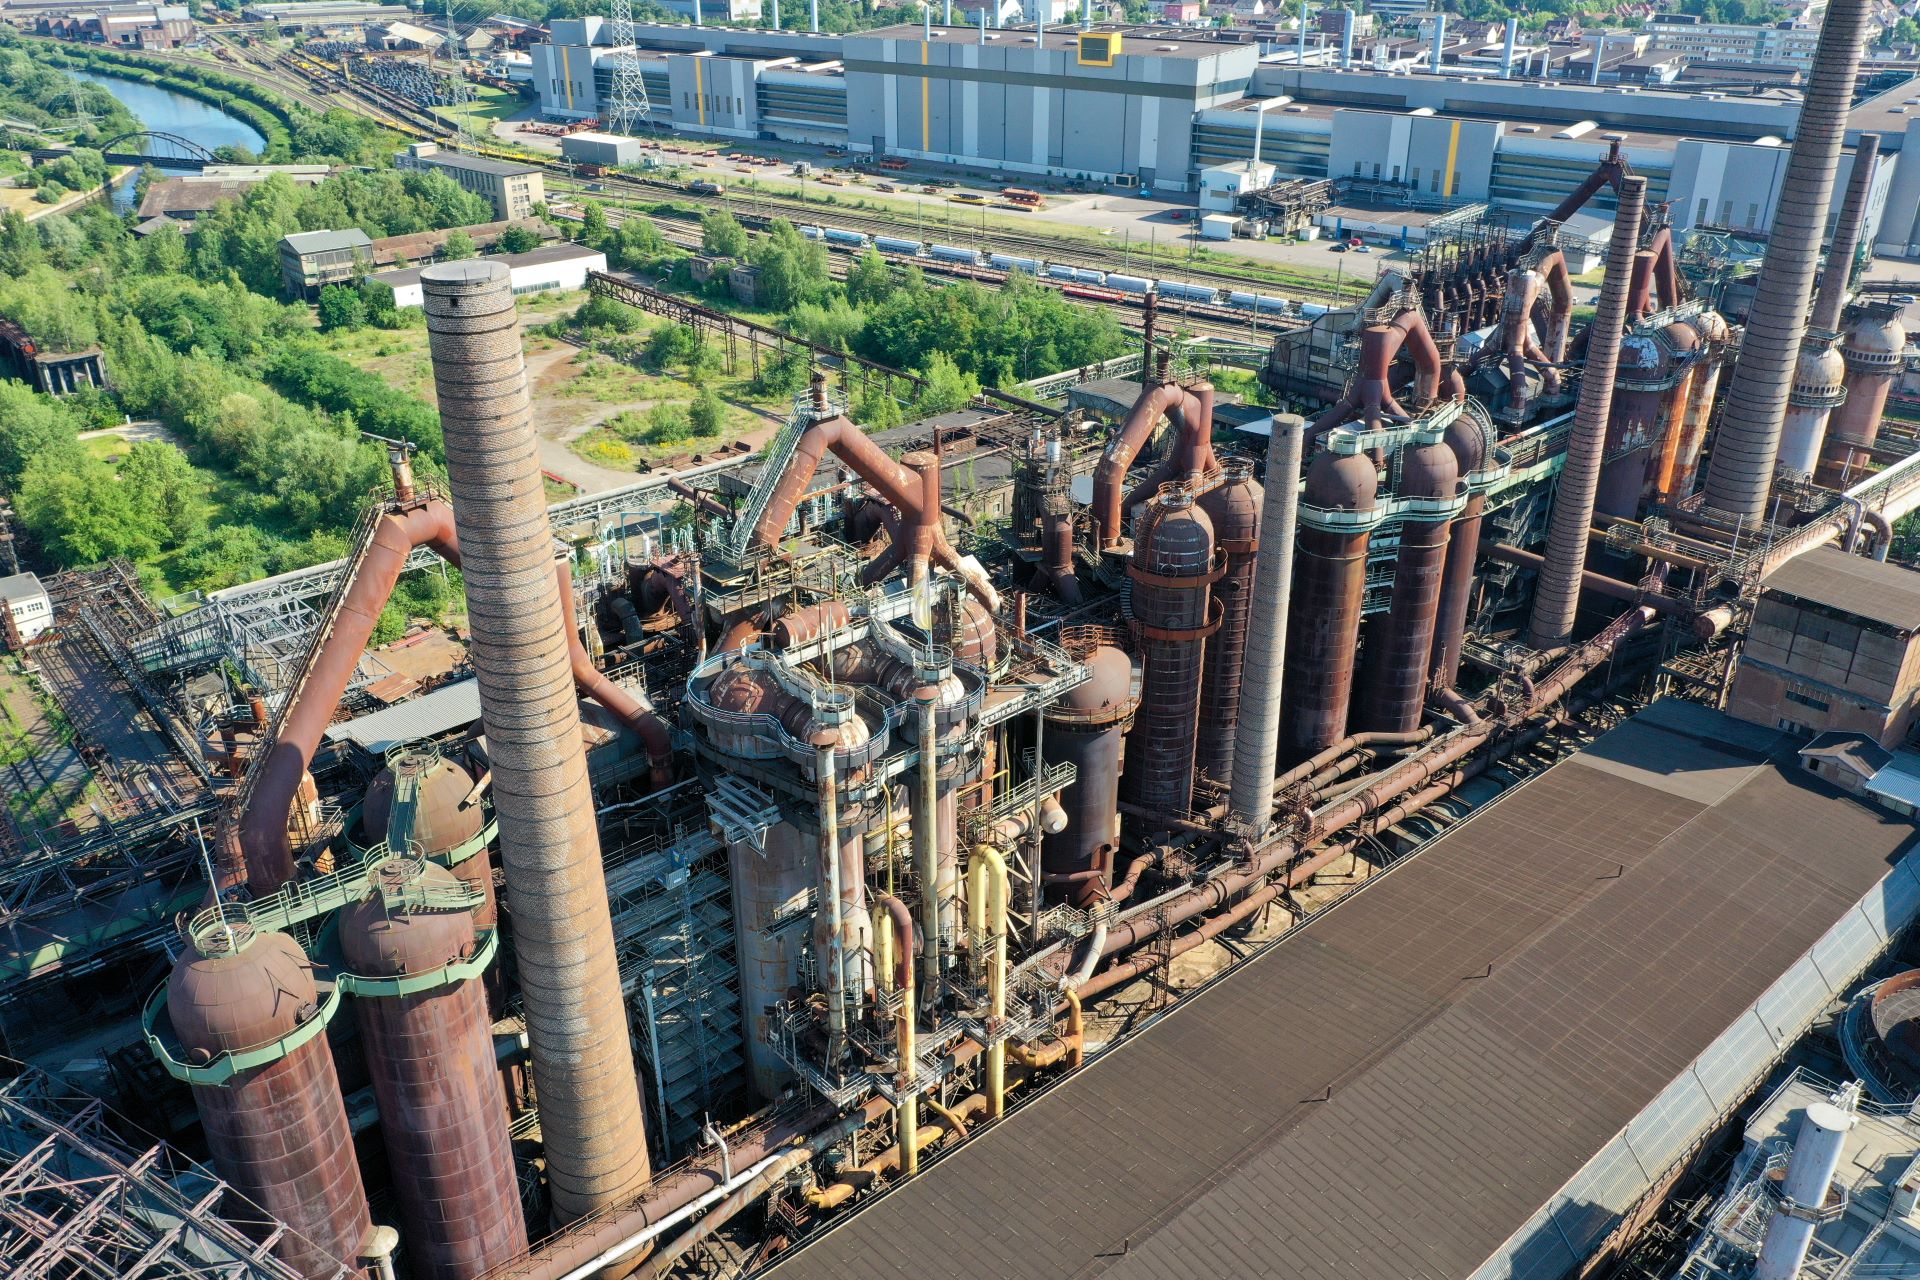 Une vue à vol d'oiseau du site industriel de l'usine sidérurgique de Völklingen montre des tuyaux de couleur rouille, de grands bâtiments et une petite zone verte en arrière-plan.